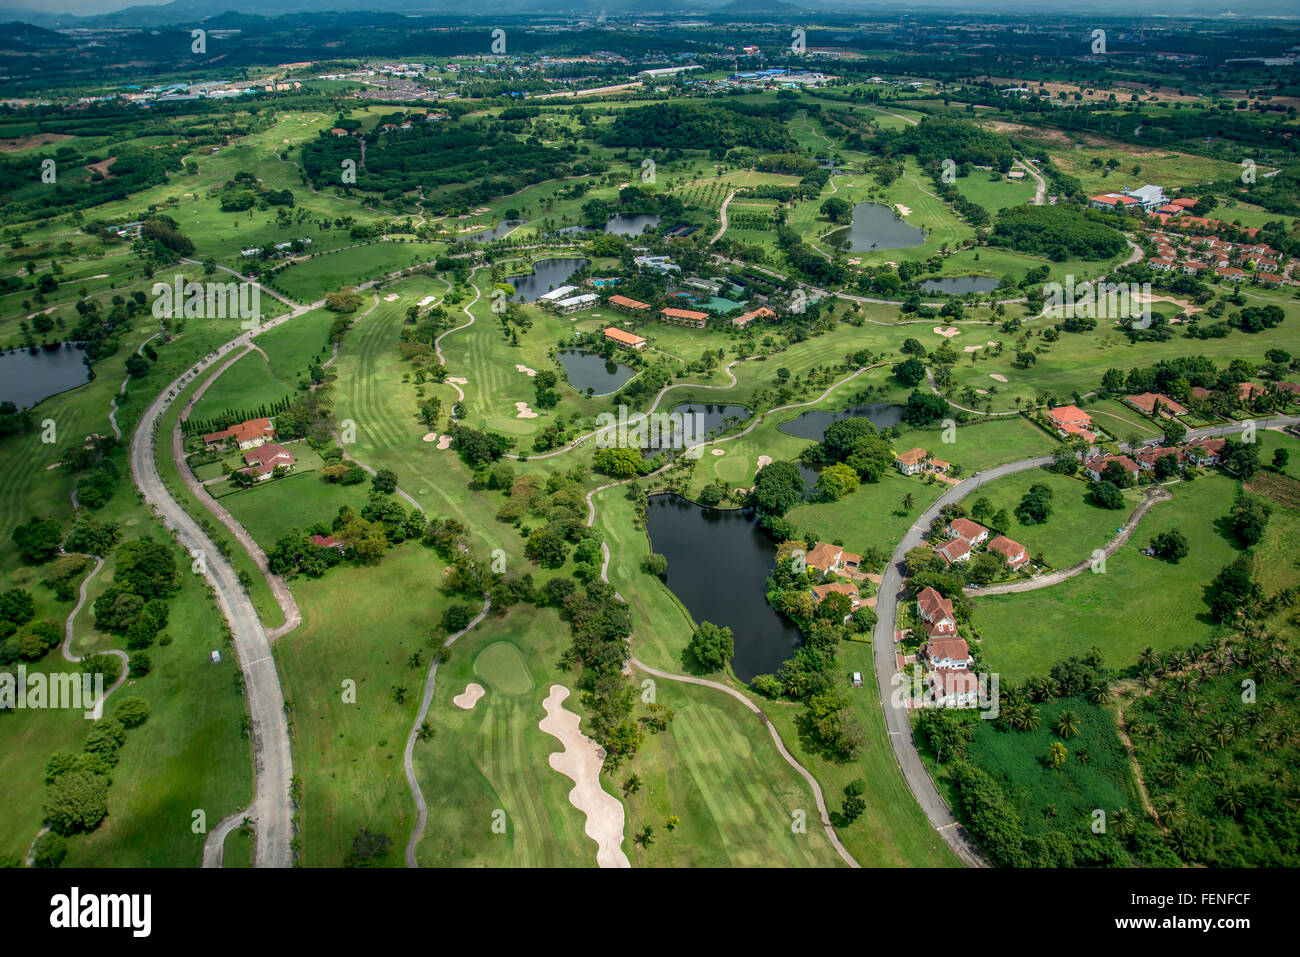 Campo de golf club de fotografía aérea en Tailandia Foto de stock